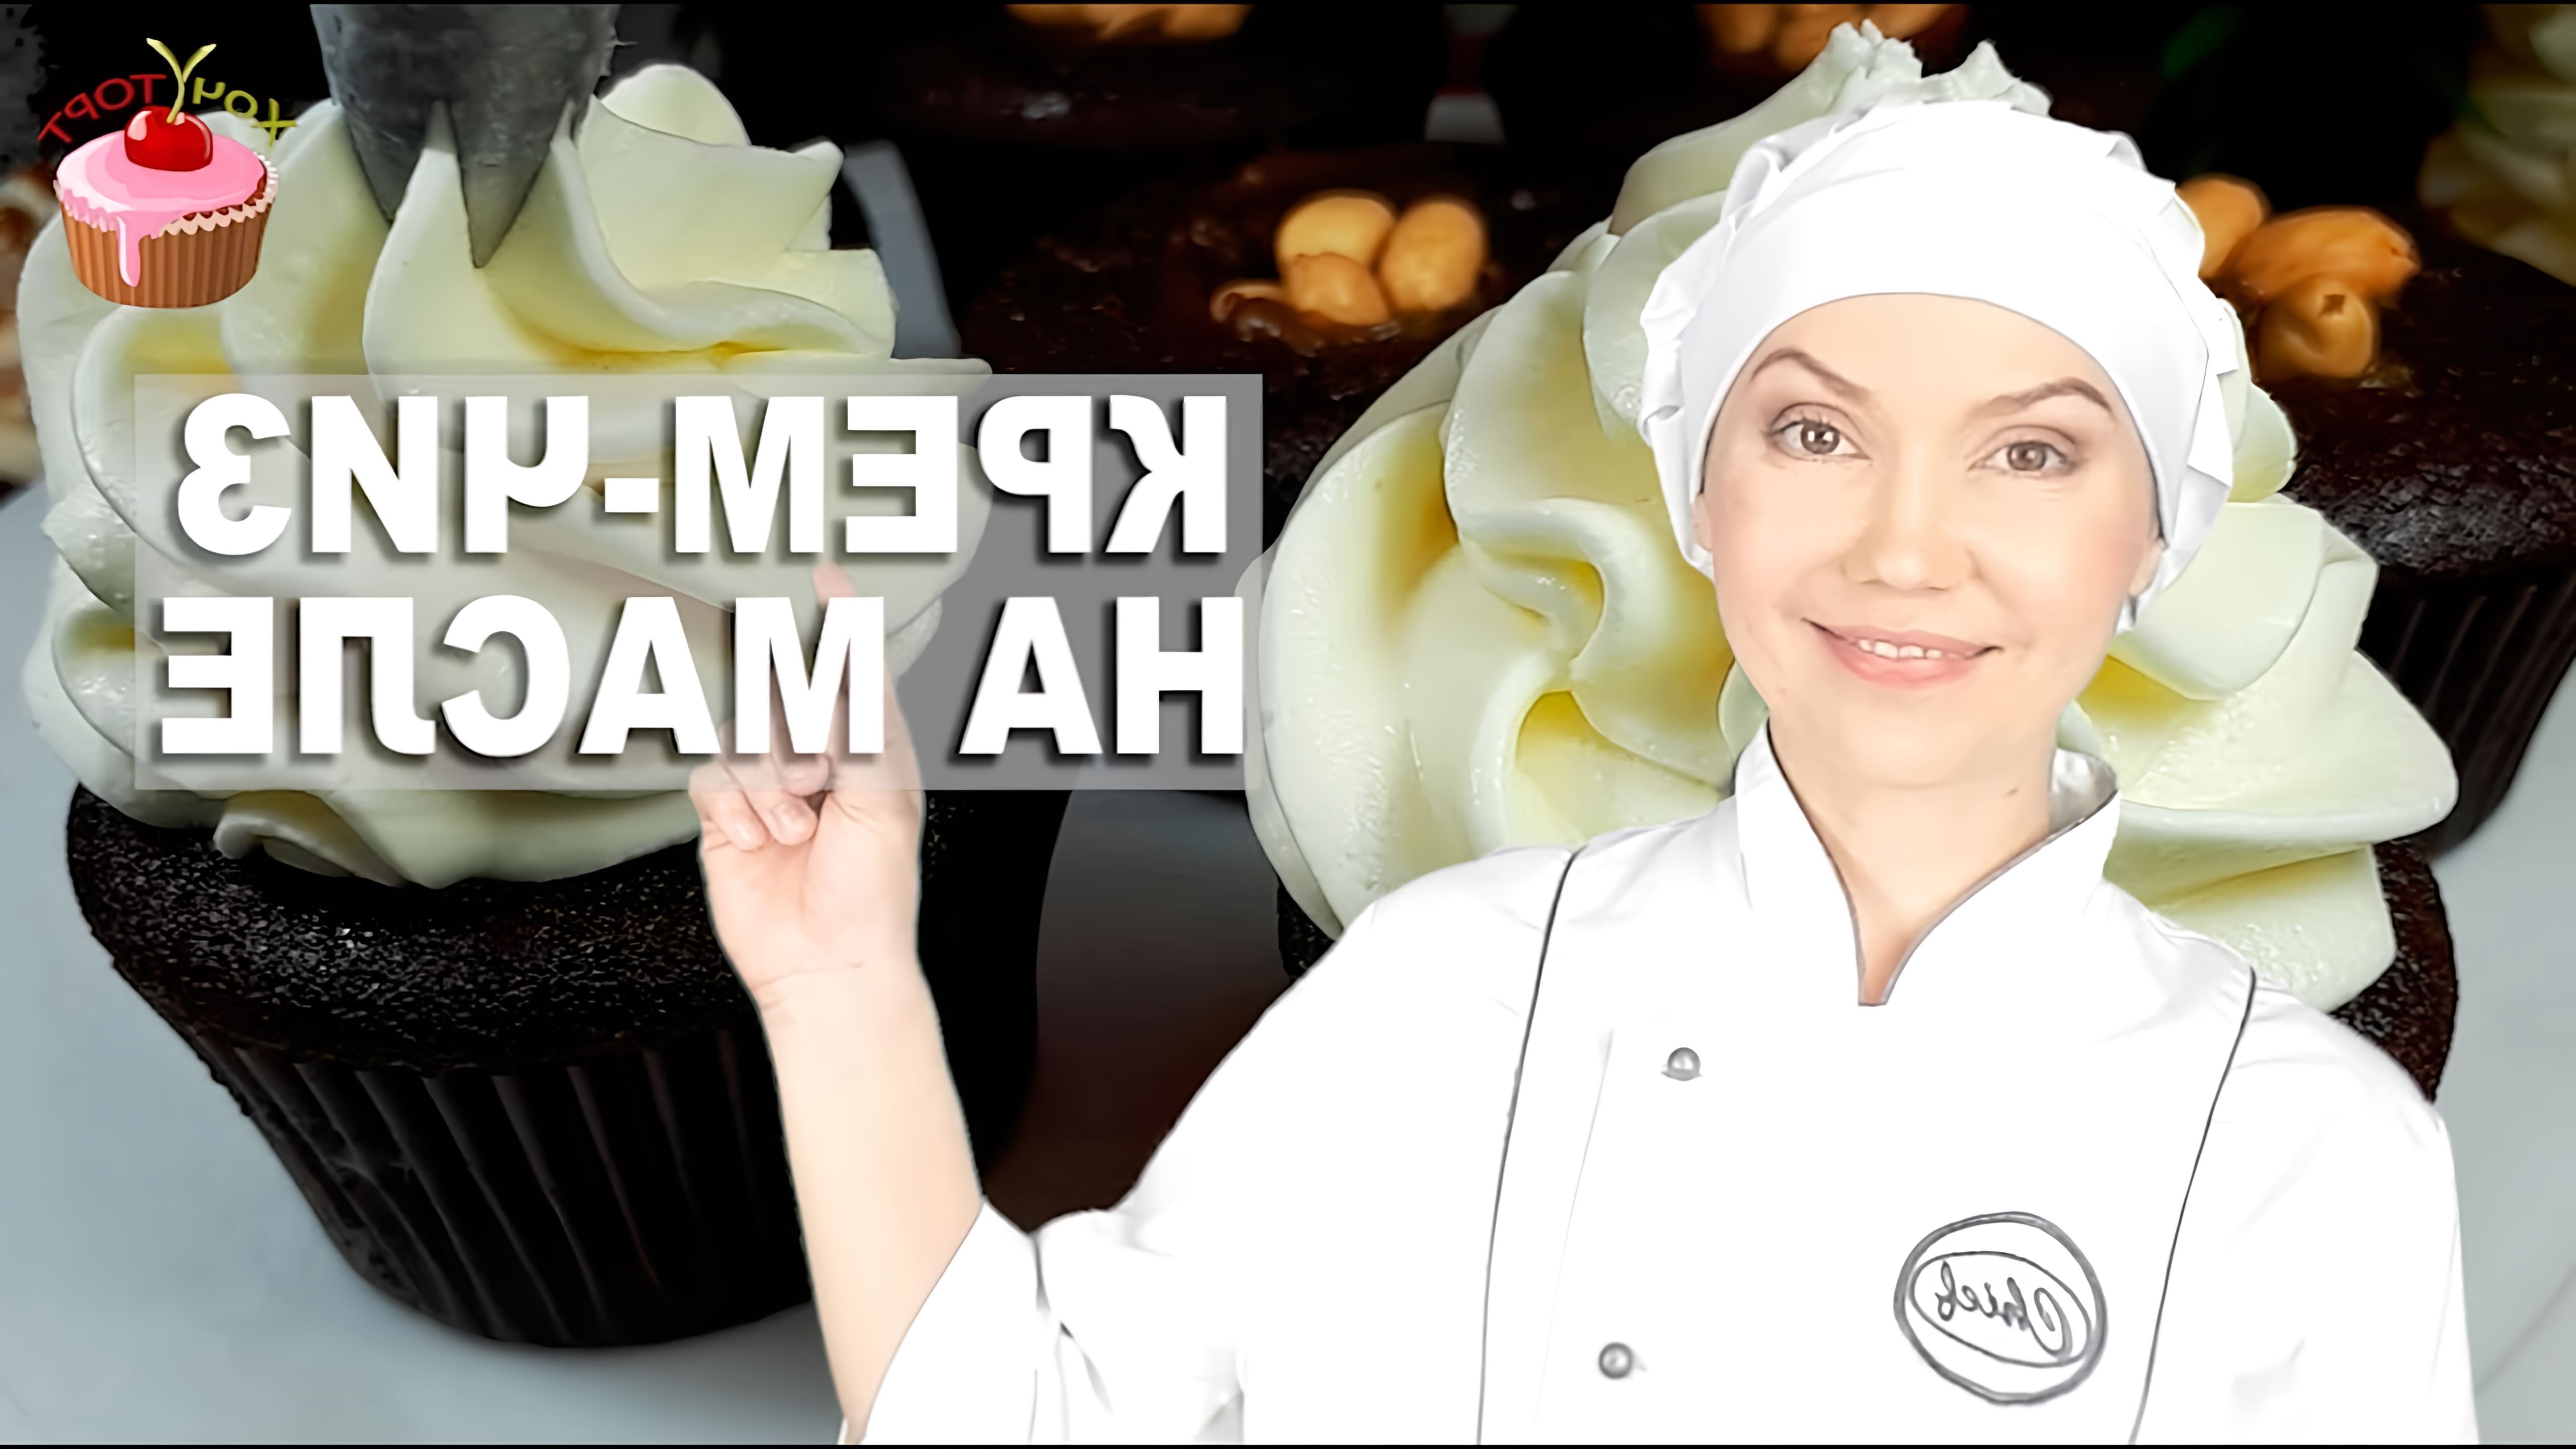 В данном видео демонстрируется рецепт приготовления крема чиз для тортов, капкейков и выравнивания тортов